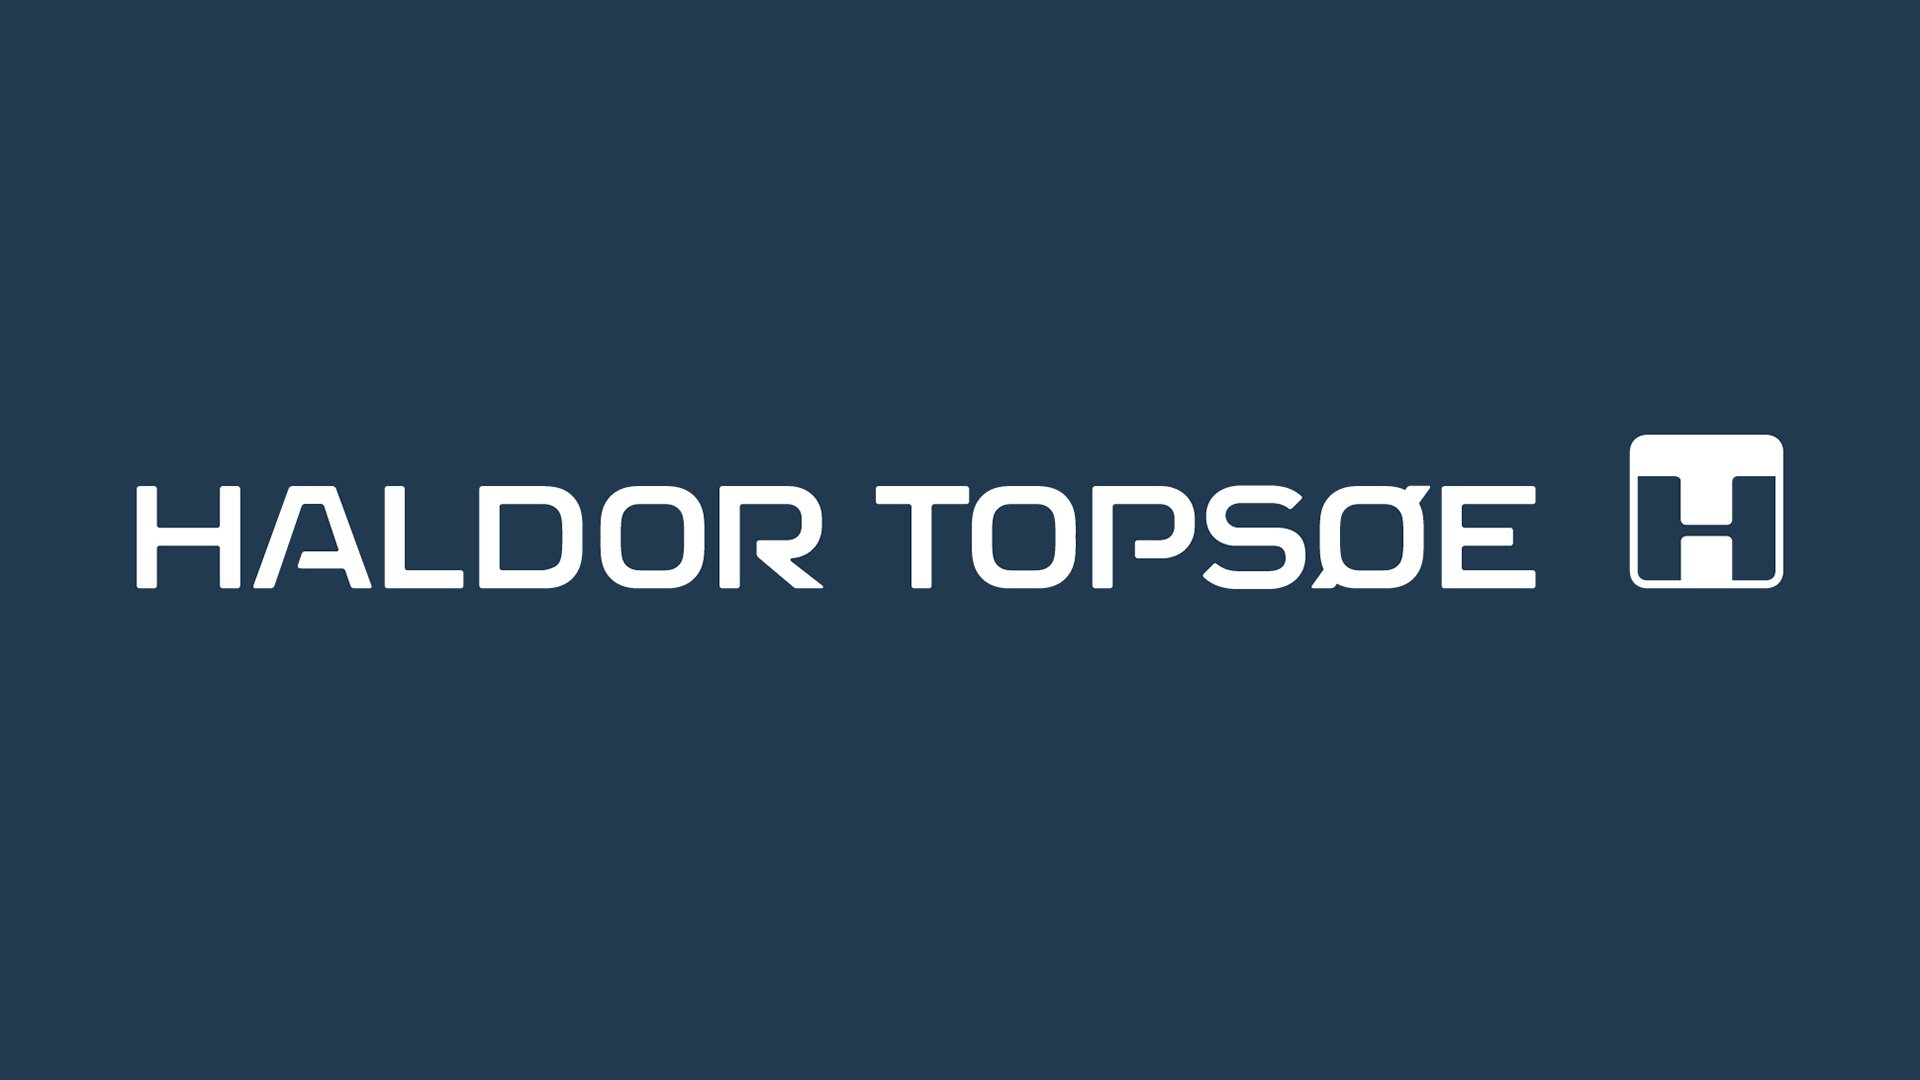 Haldor Topsøe logo on negative color by LOOP Associates